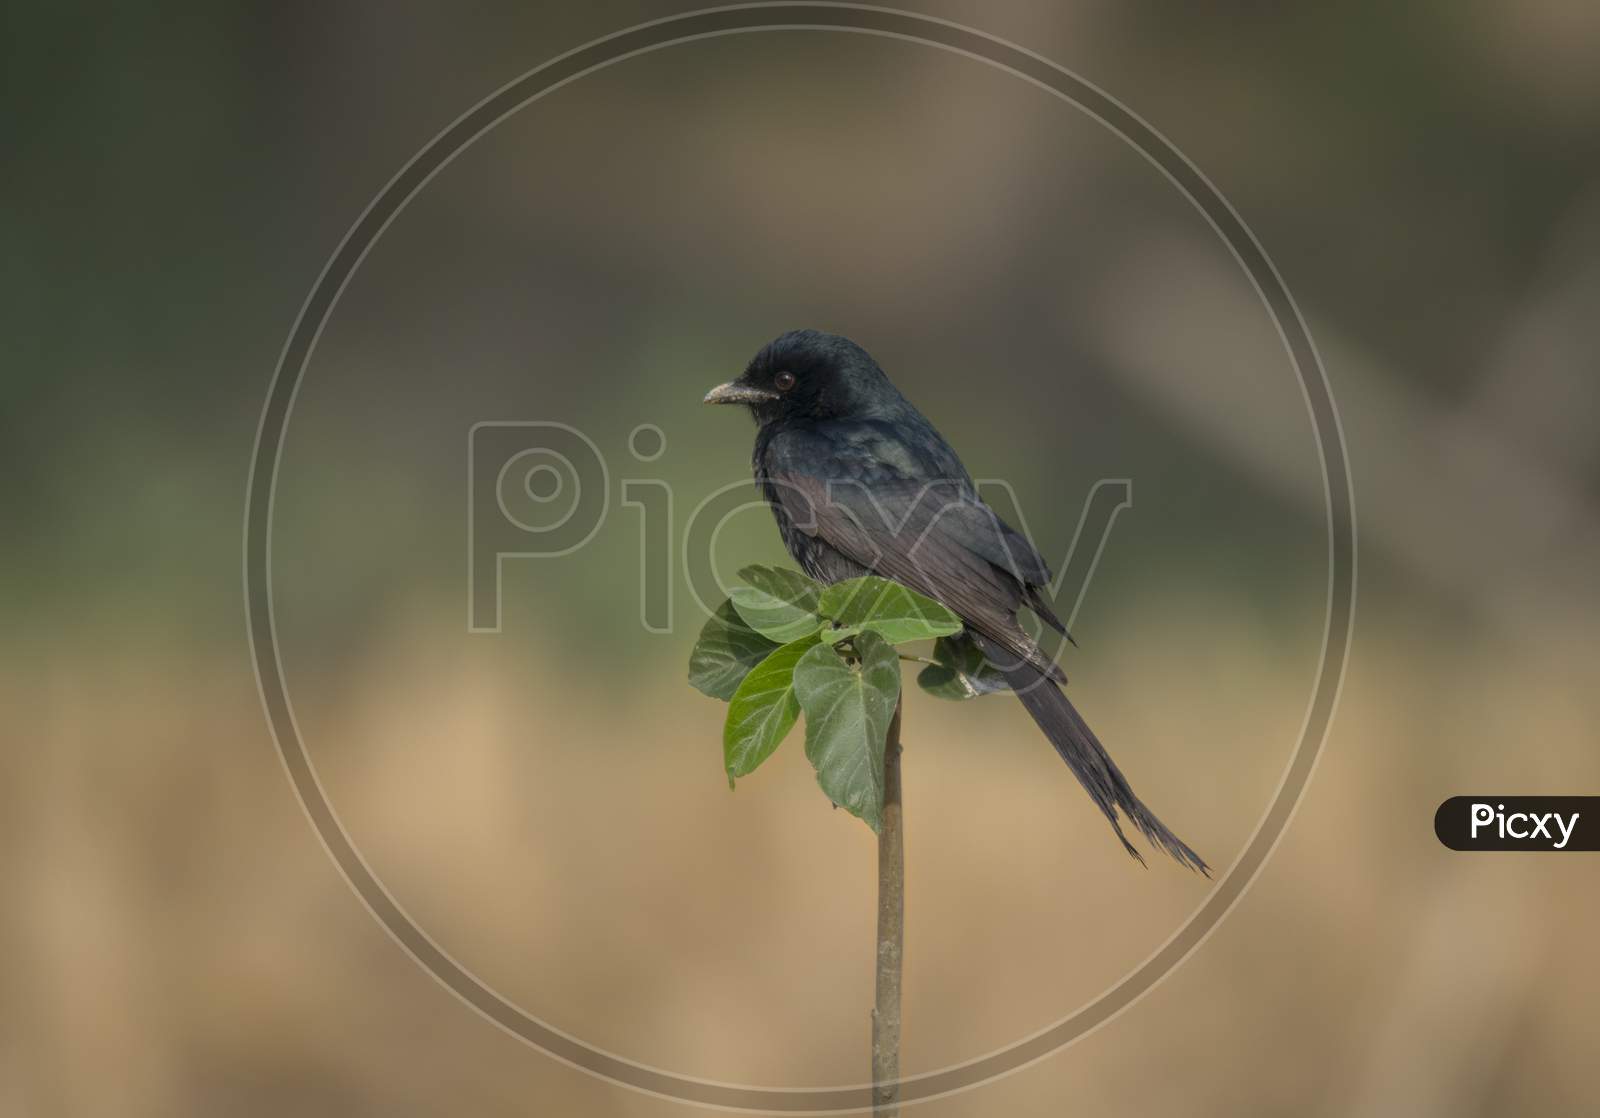 A Wild Black Bird In Open Perch At Grassland .